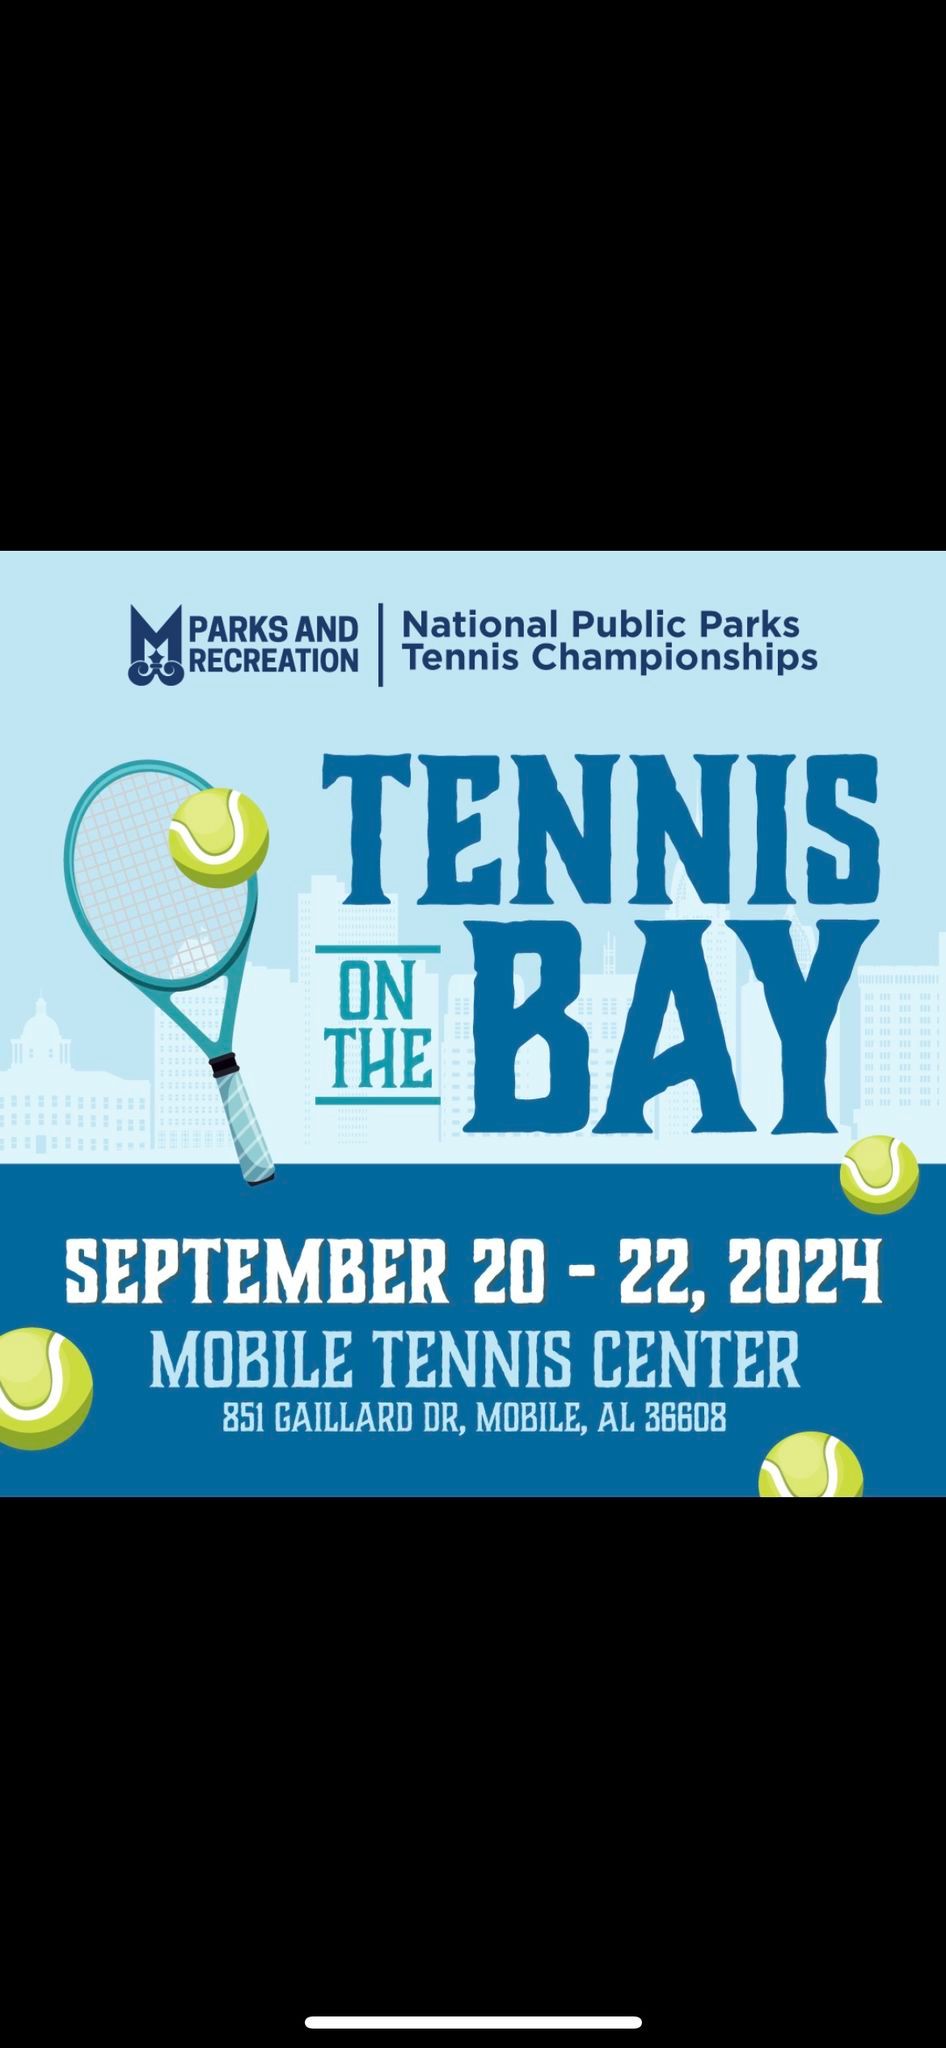 National Public Parks Tennis Championship